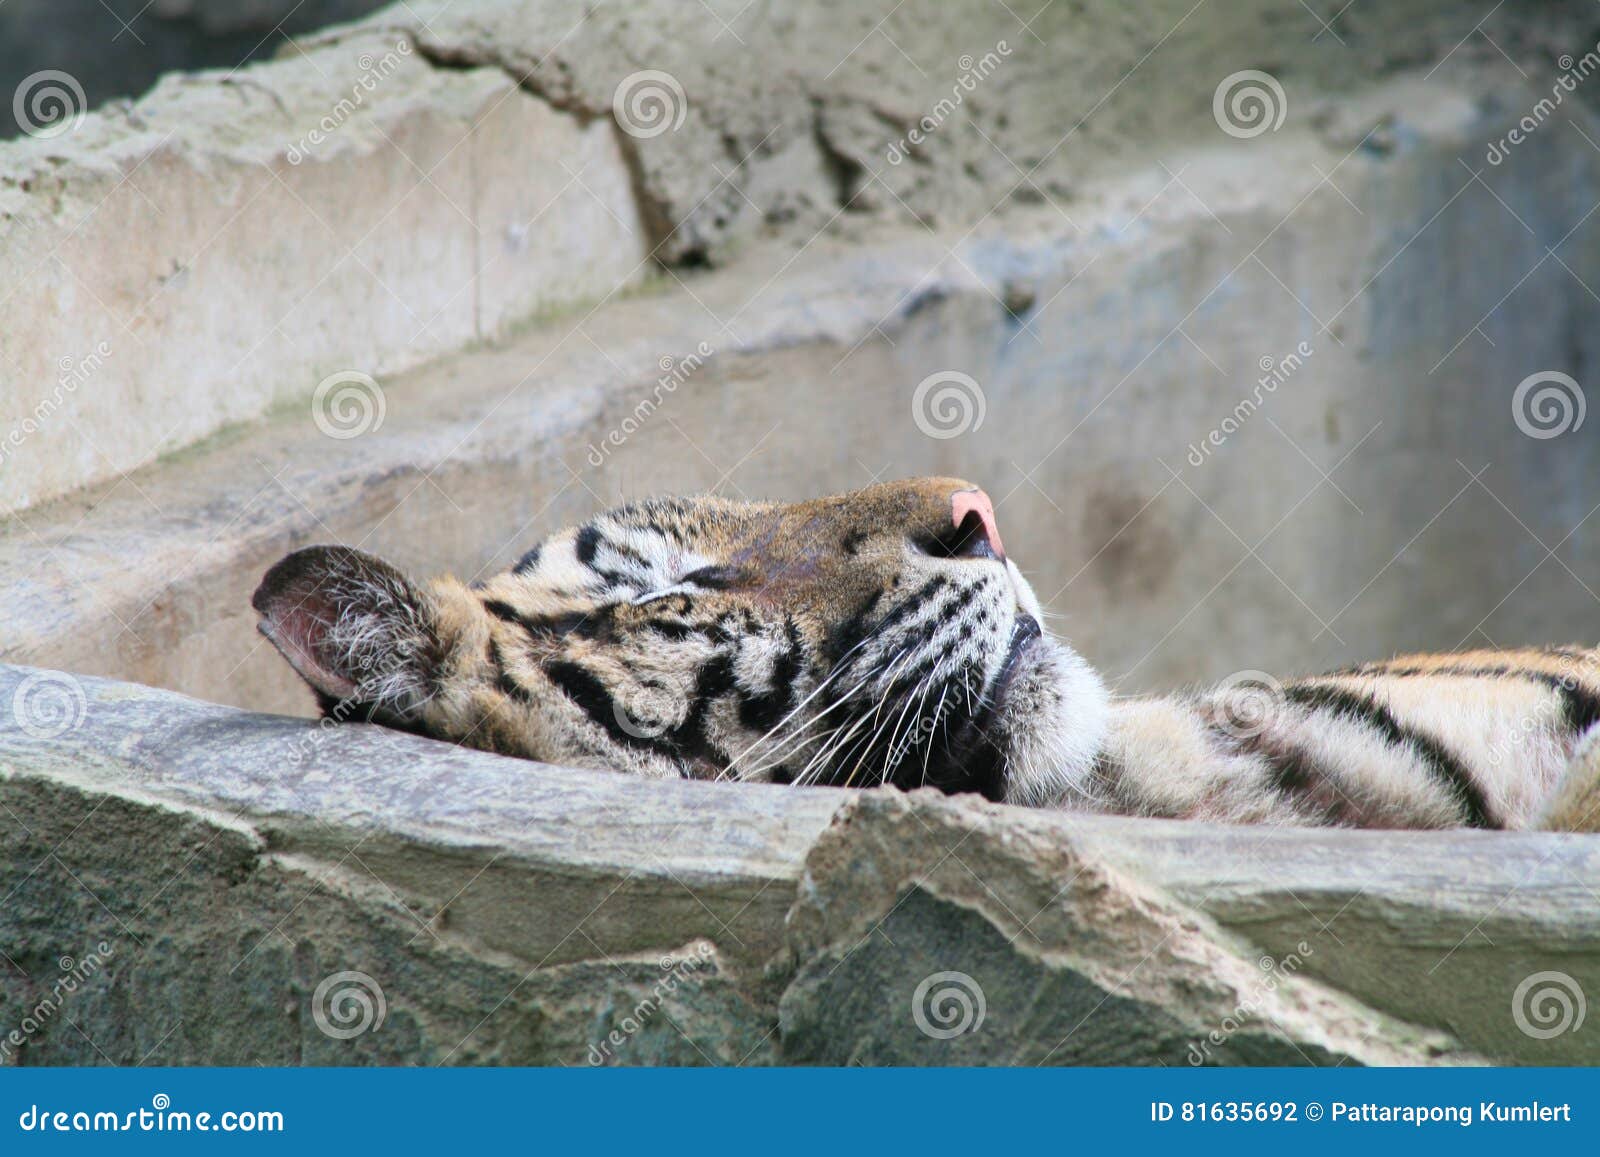 老虎 动物 睡觉 - Pixabay上的免费照片 - Pixabay